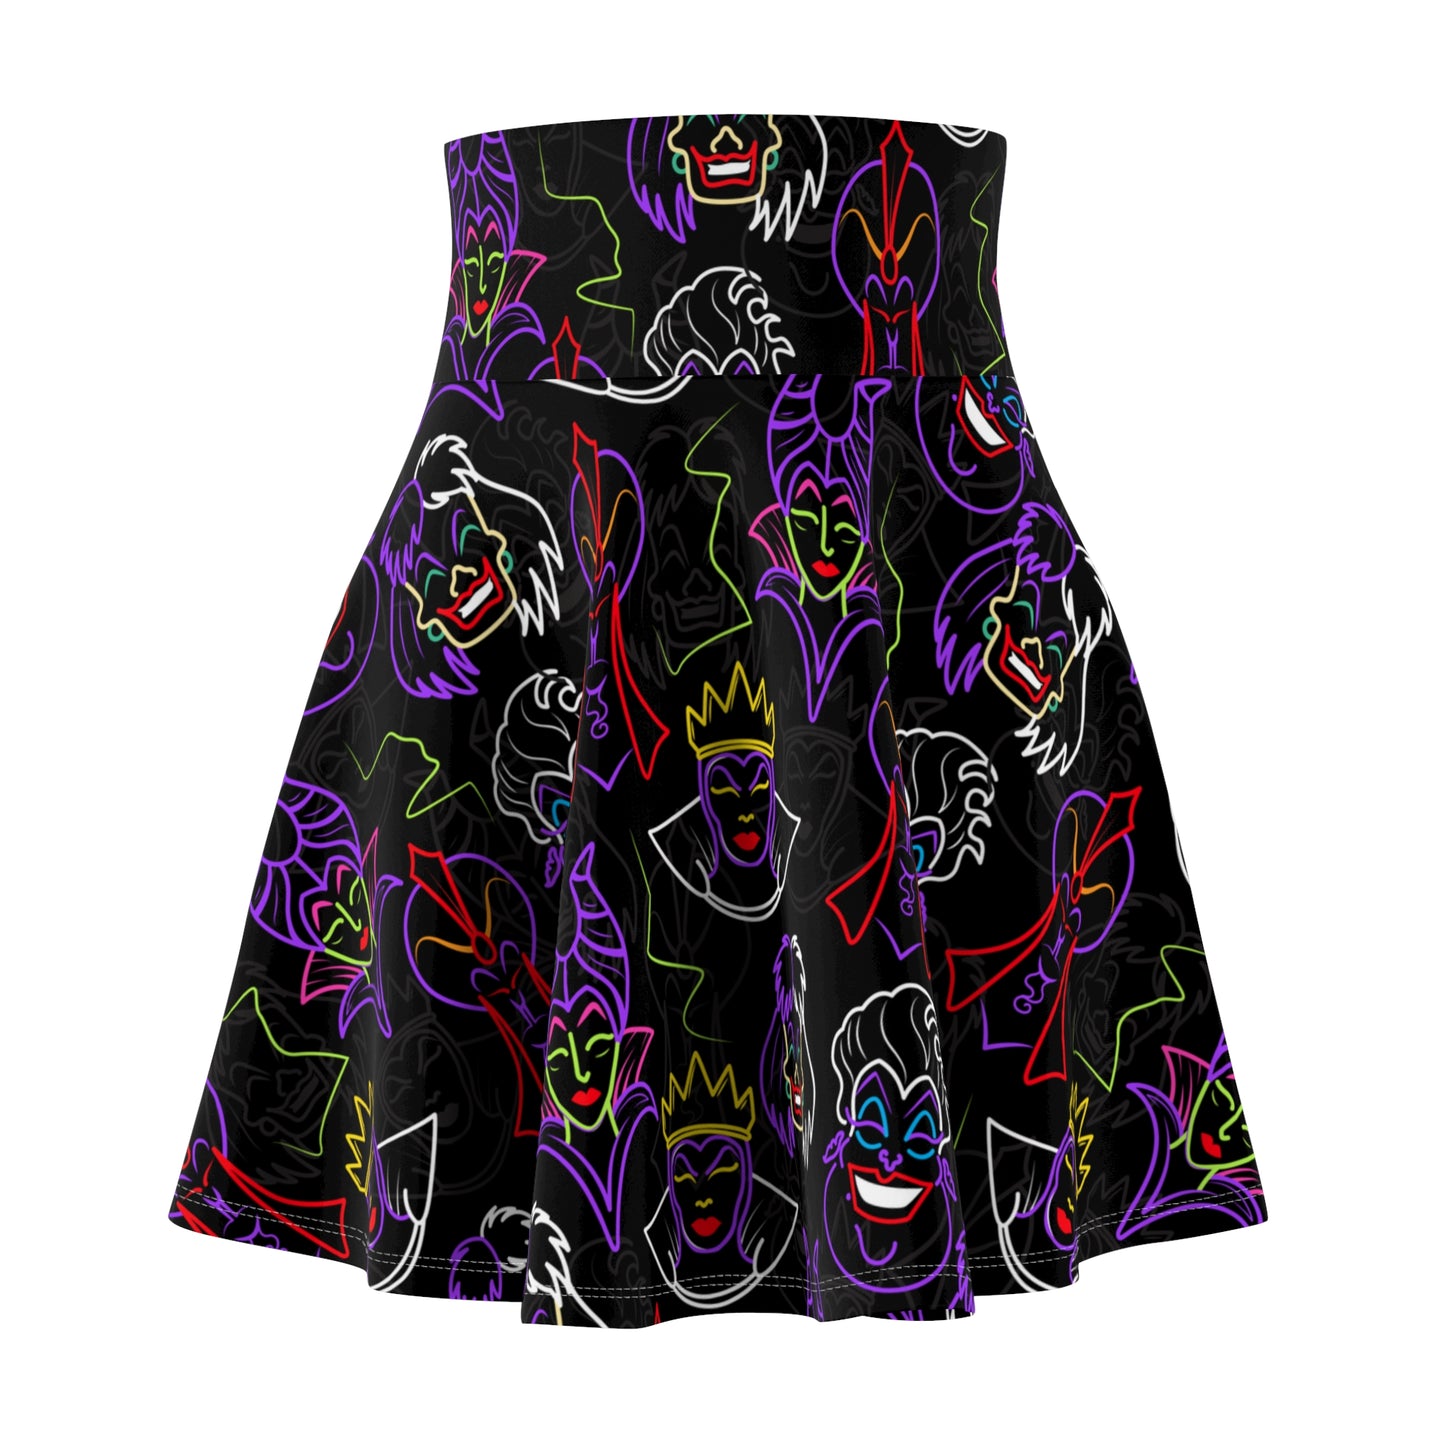 Neon Villains Women's Skater Skirt